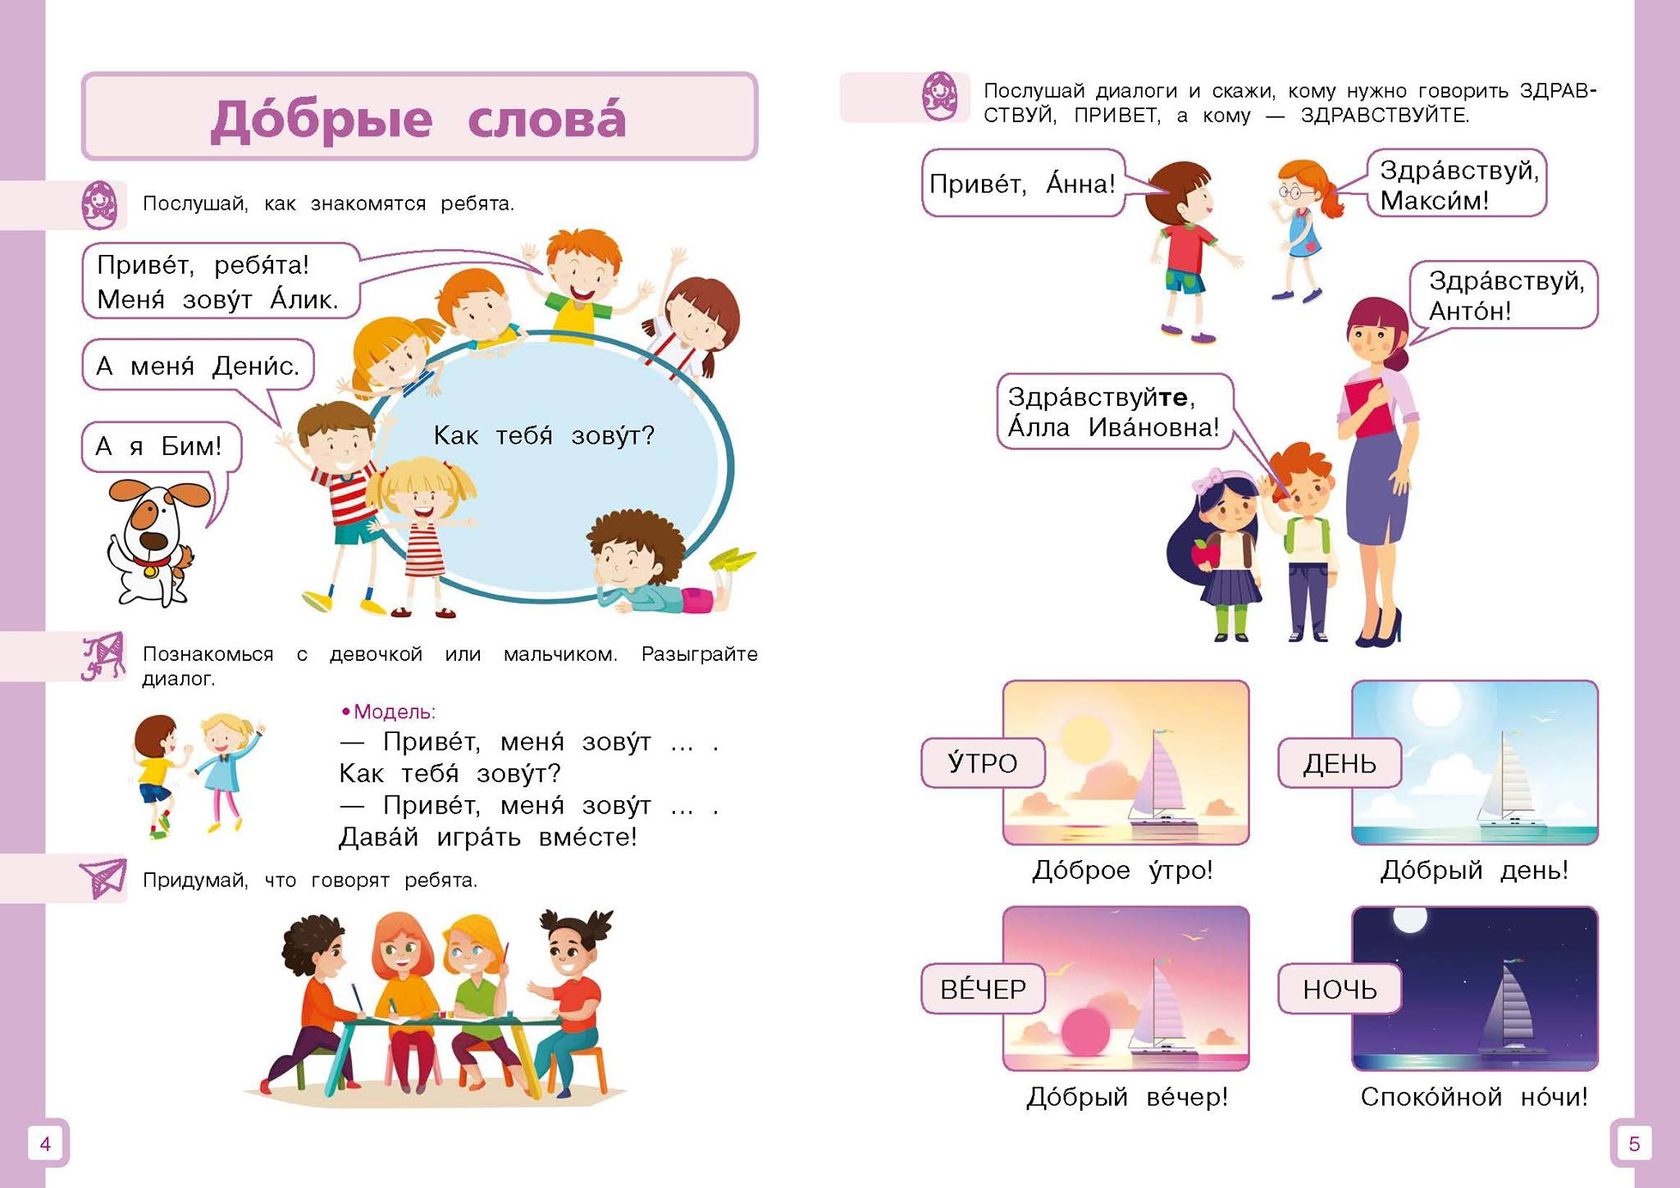 Сум рки. Задания для детей билингвов. Задания для детей билингвов по русскому языку. РКИ для детей билингвов. Русский язык для детей.